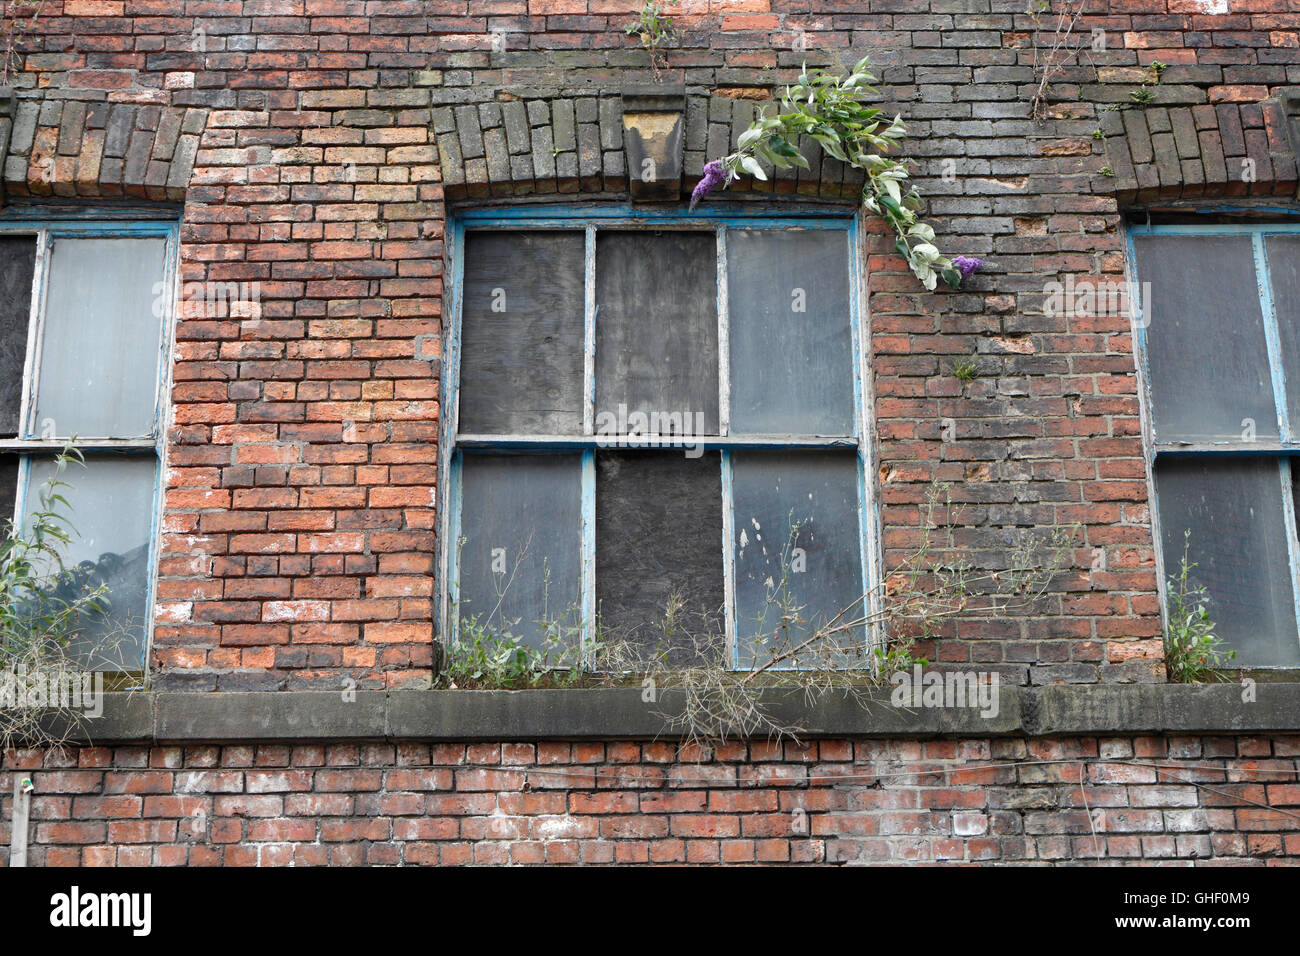 Wharncliffe arbeitet in Shalesmoor Sheffield England, Großbritannien, verlassenes Fabrikgebäude, das auf die Sanierung wartet, denkmalgeschütztes Gebäude Stockfoto